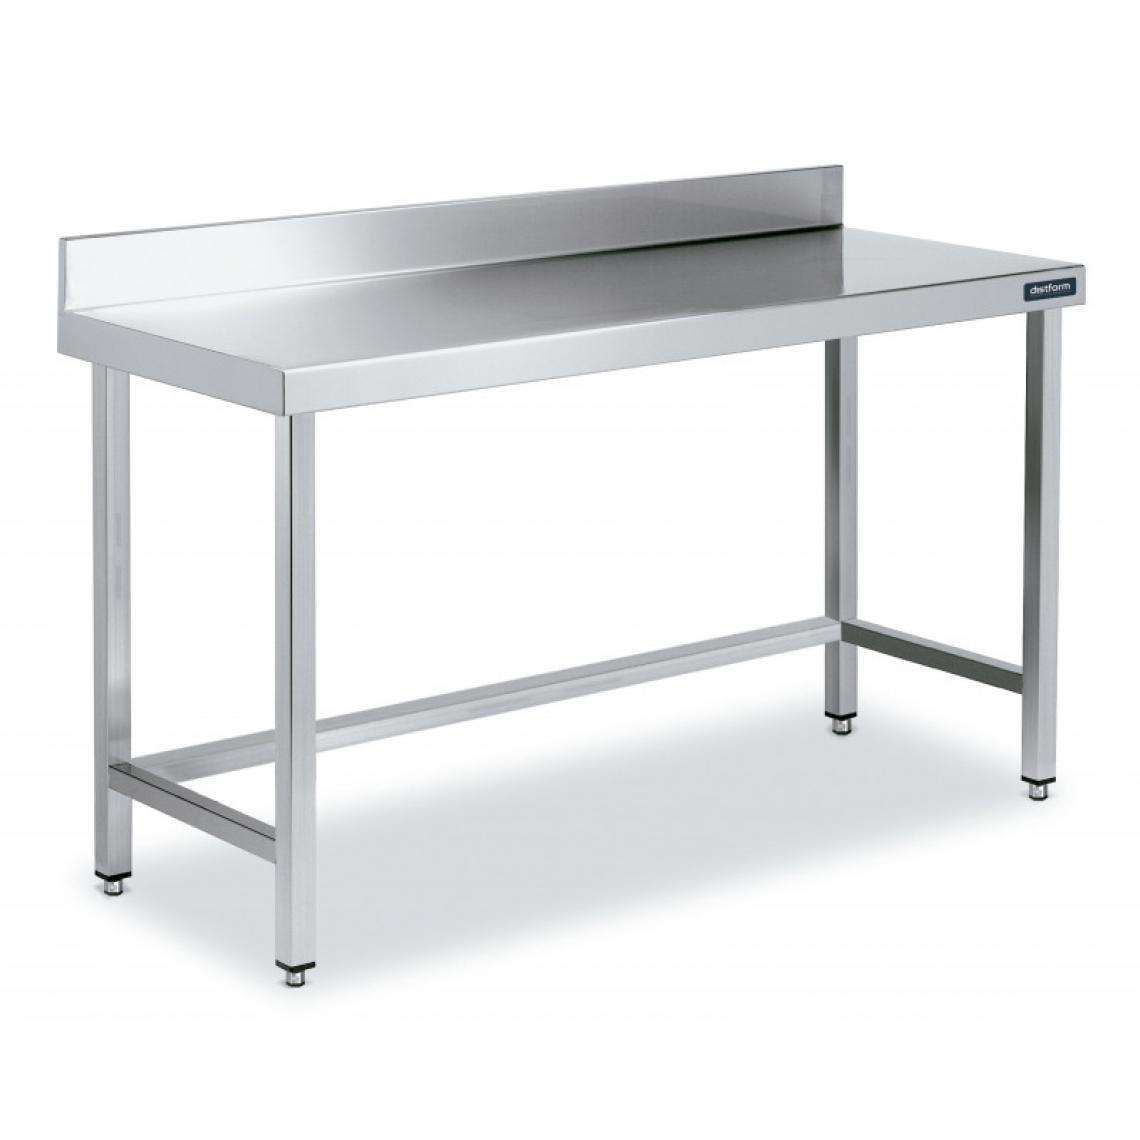 DISTFORM - Table Adossée en Inox avec Renforts Profondeur 700 mm - Distform - Acier inoxydable1100x700 - Tables à manger